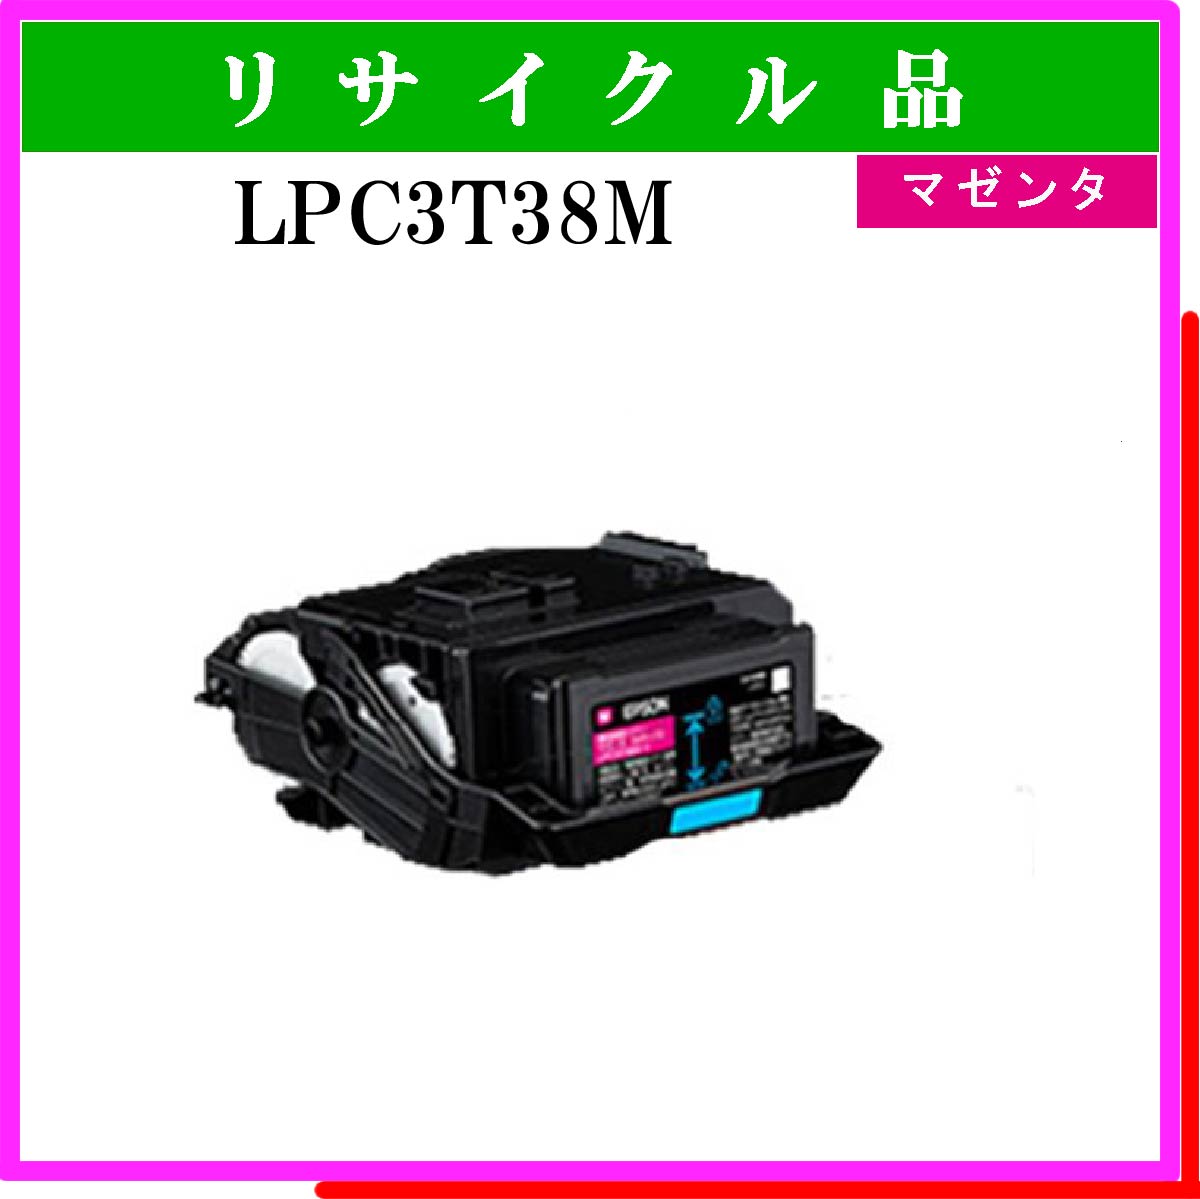 LPC3T38M